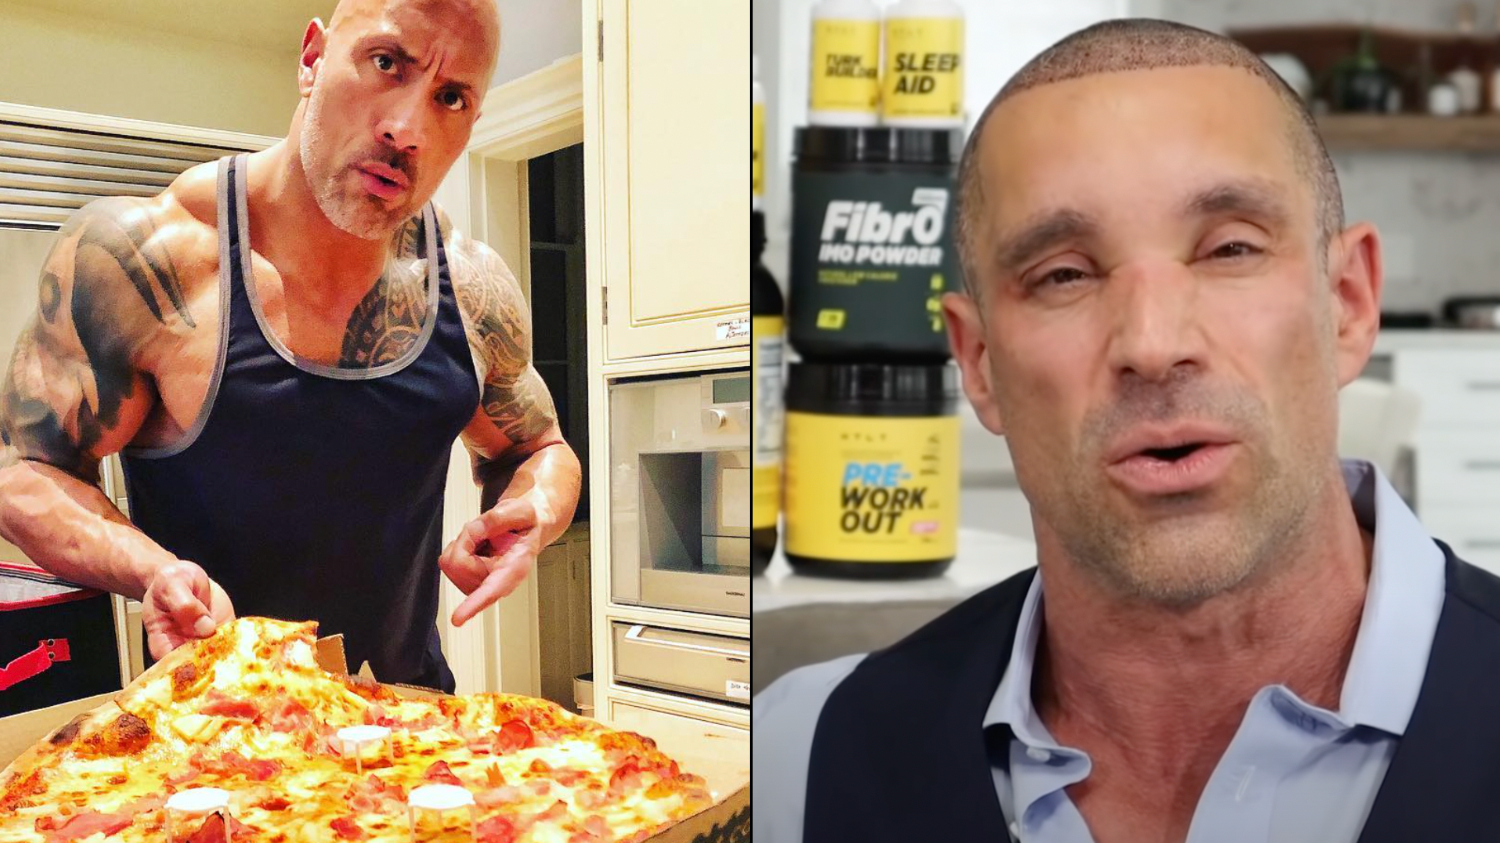 Dwayne Johnson The Rock Instagram: Loves Pineapple Pizza